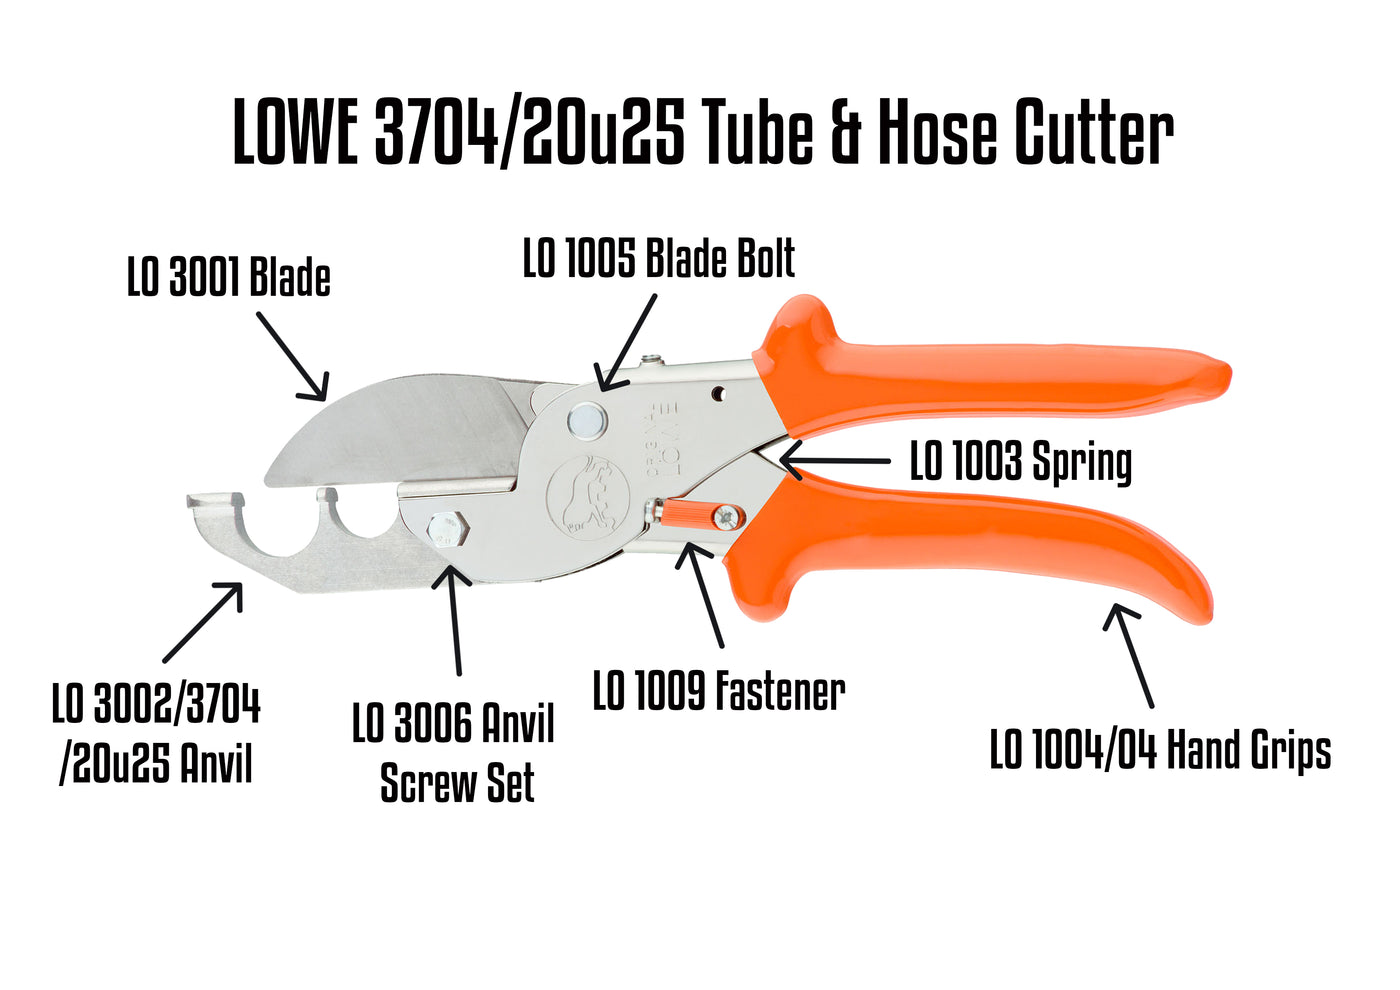 LO 370/20u25 Tube Cutter